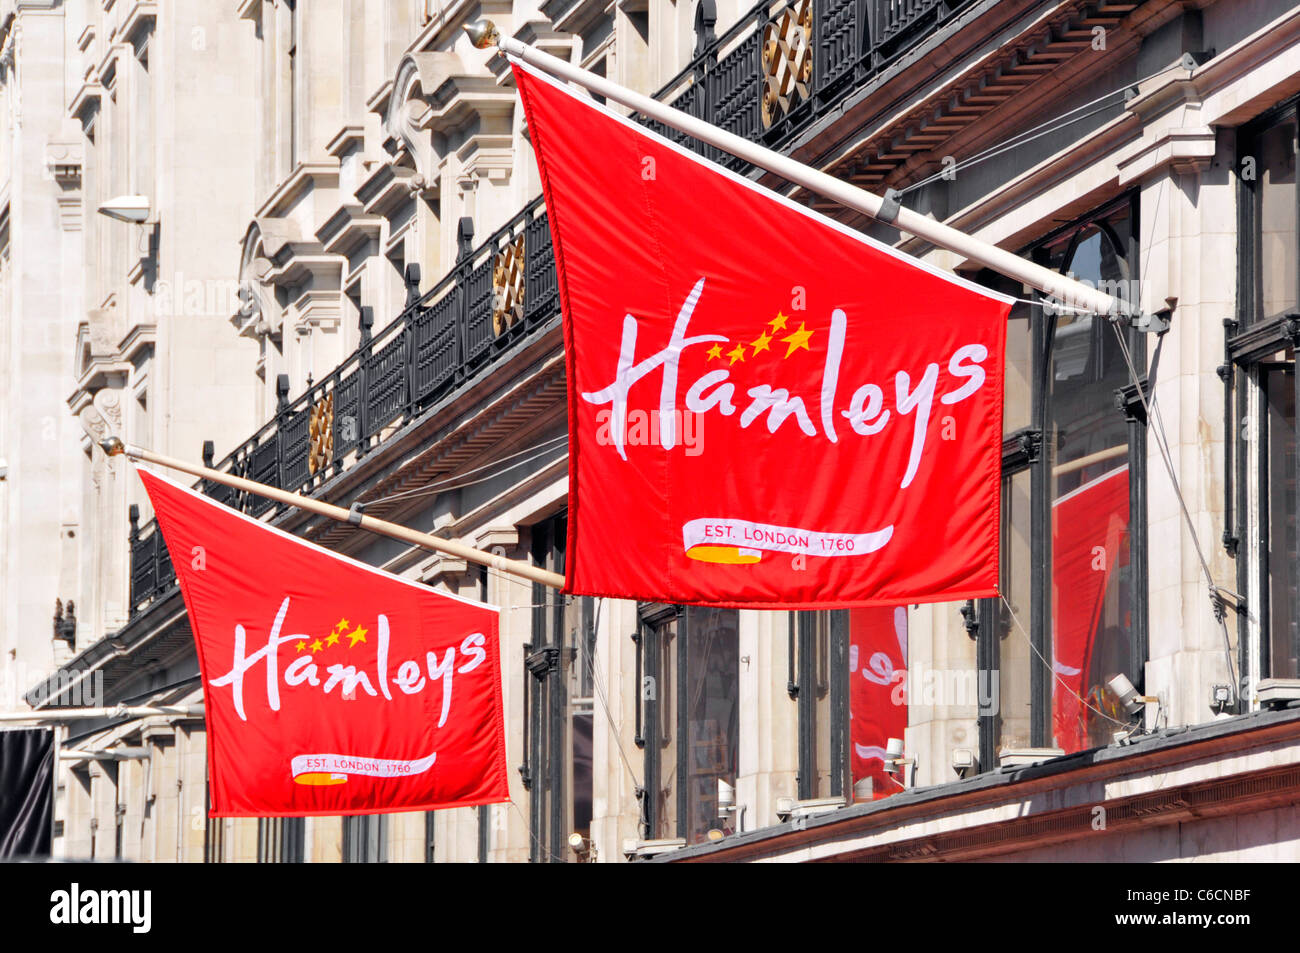 Logo Hamleys sur des bannières rouges au-dessus de la célèbre boutique de jouets phare de magasin à Londres West End emplacement commercial à Regents Street Angleterre Royaume-Uni Banque D'Images